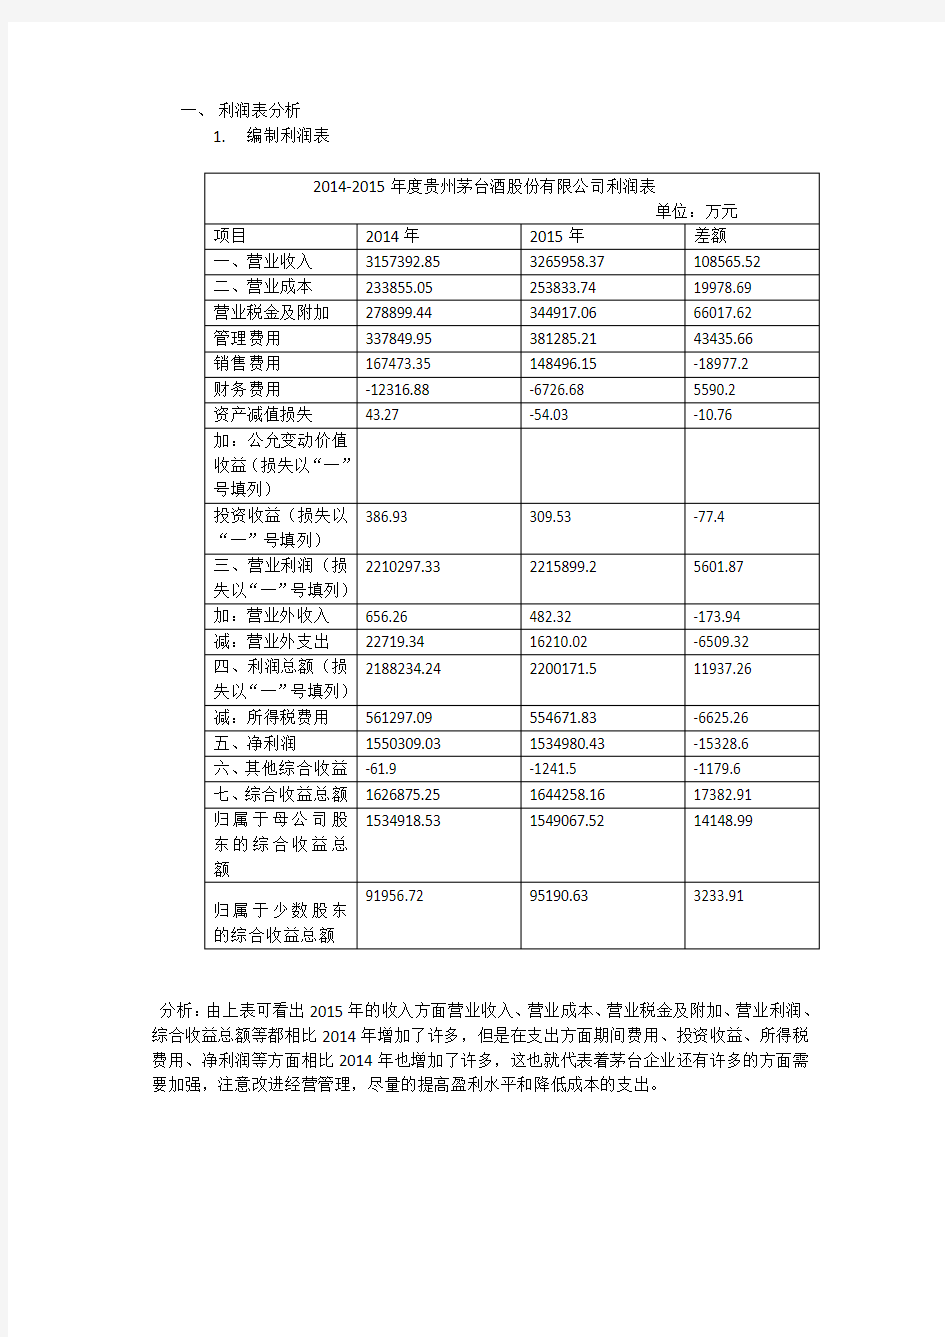 贵州茅台2014-2015利润表分析